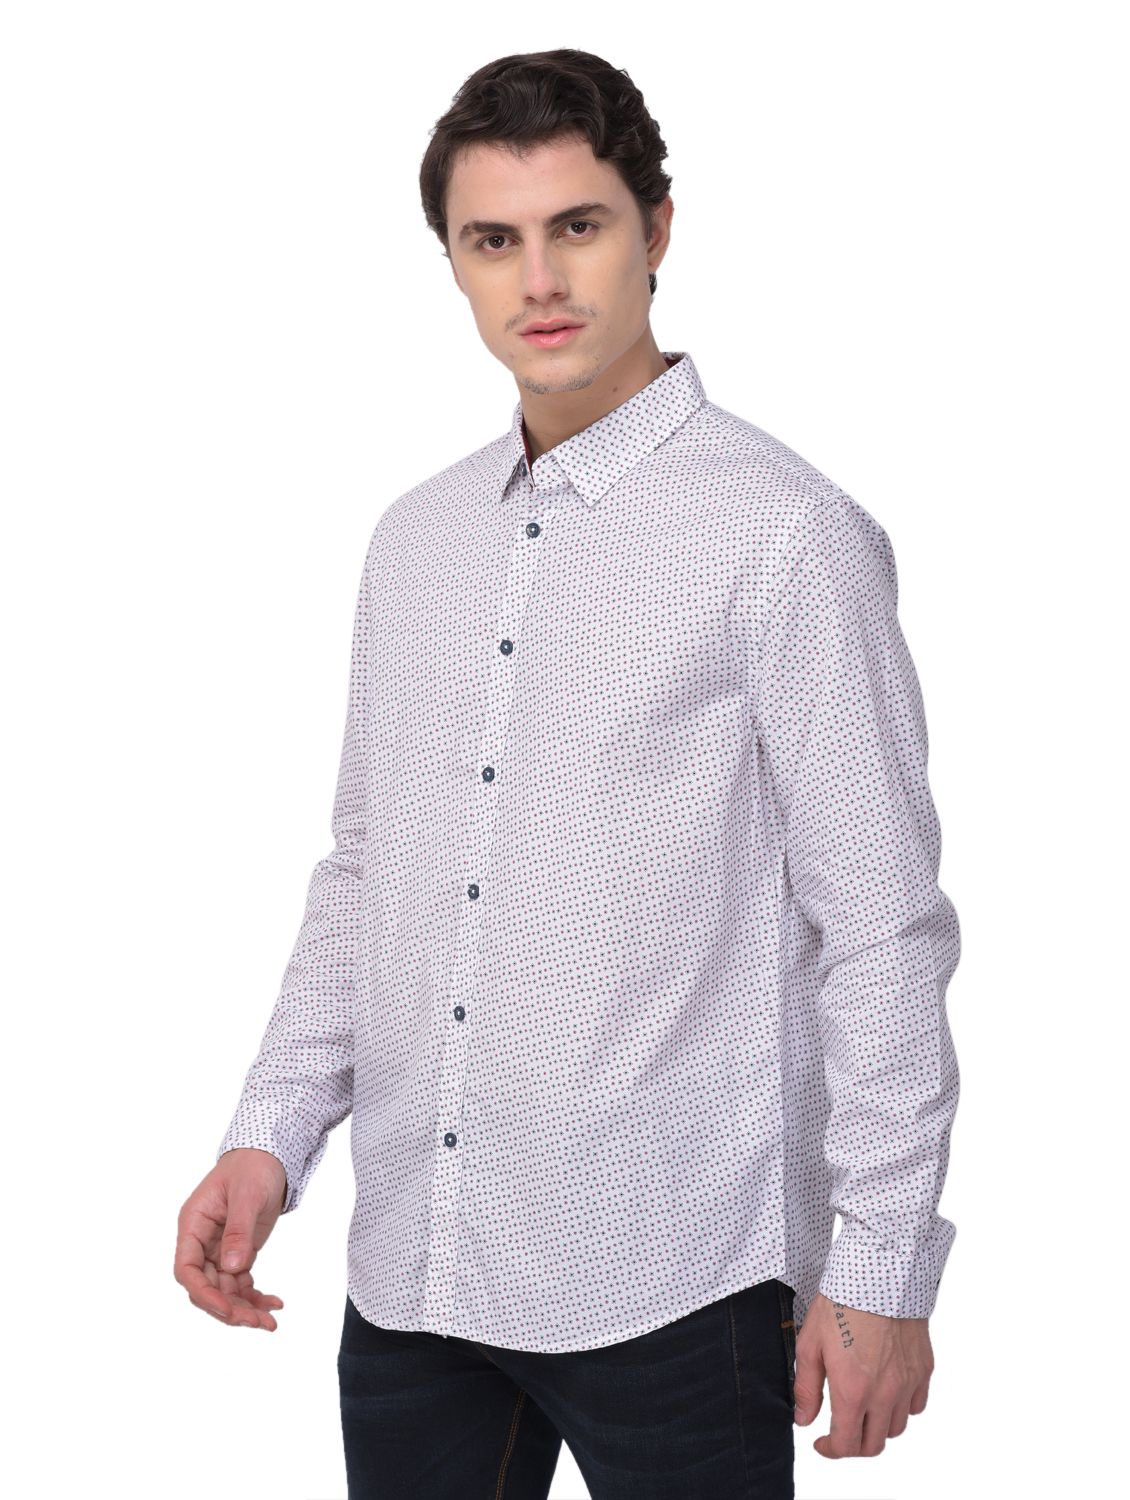 White/wine full sleeves shirt for men